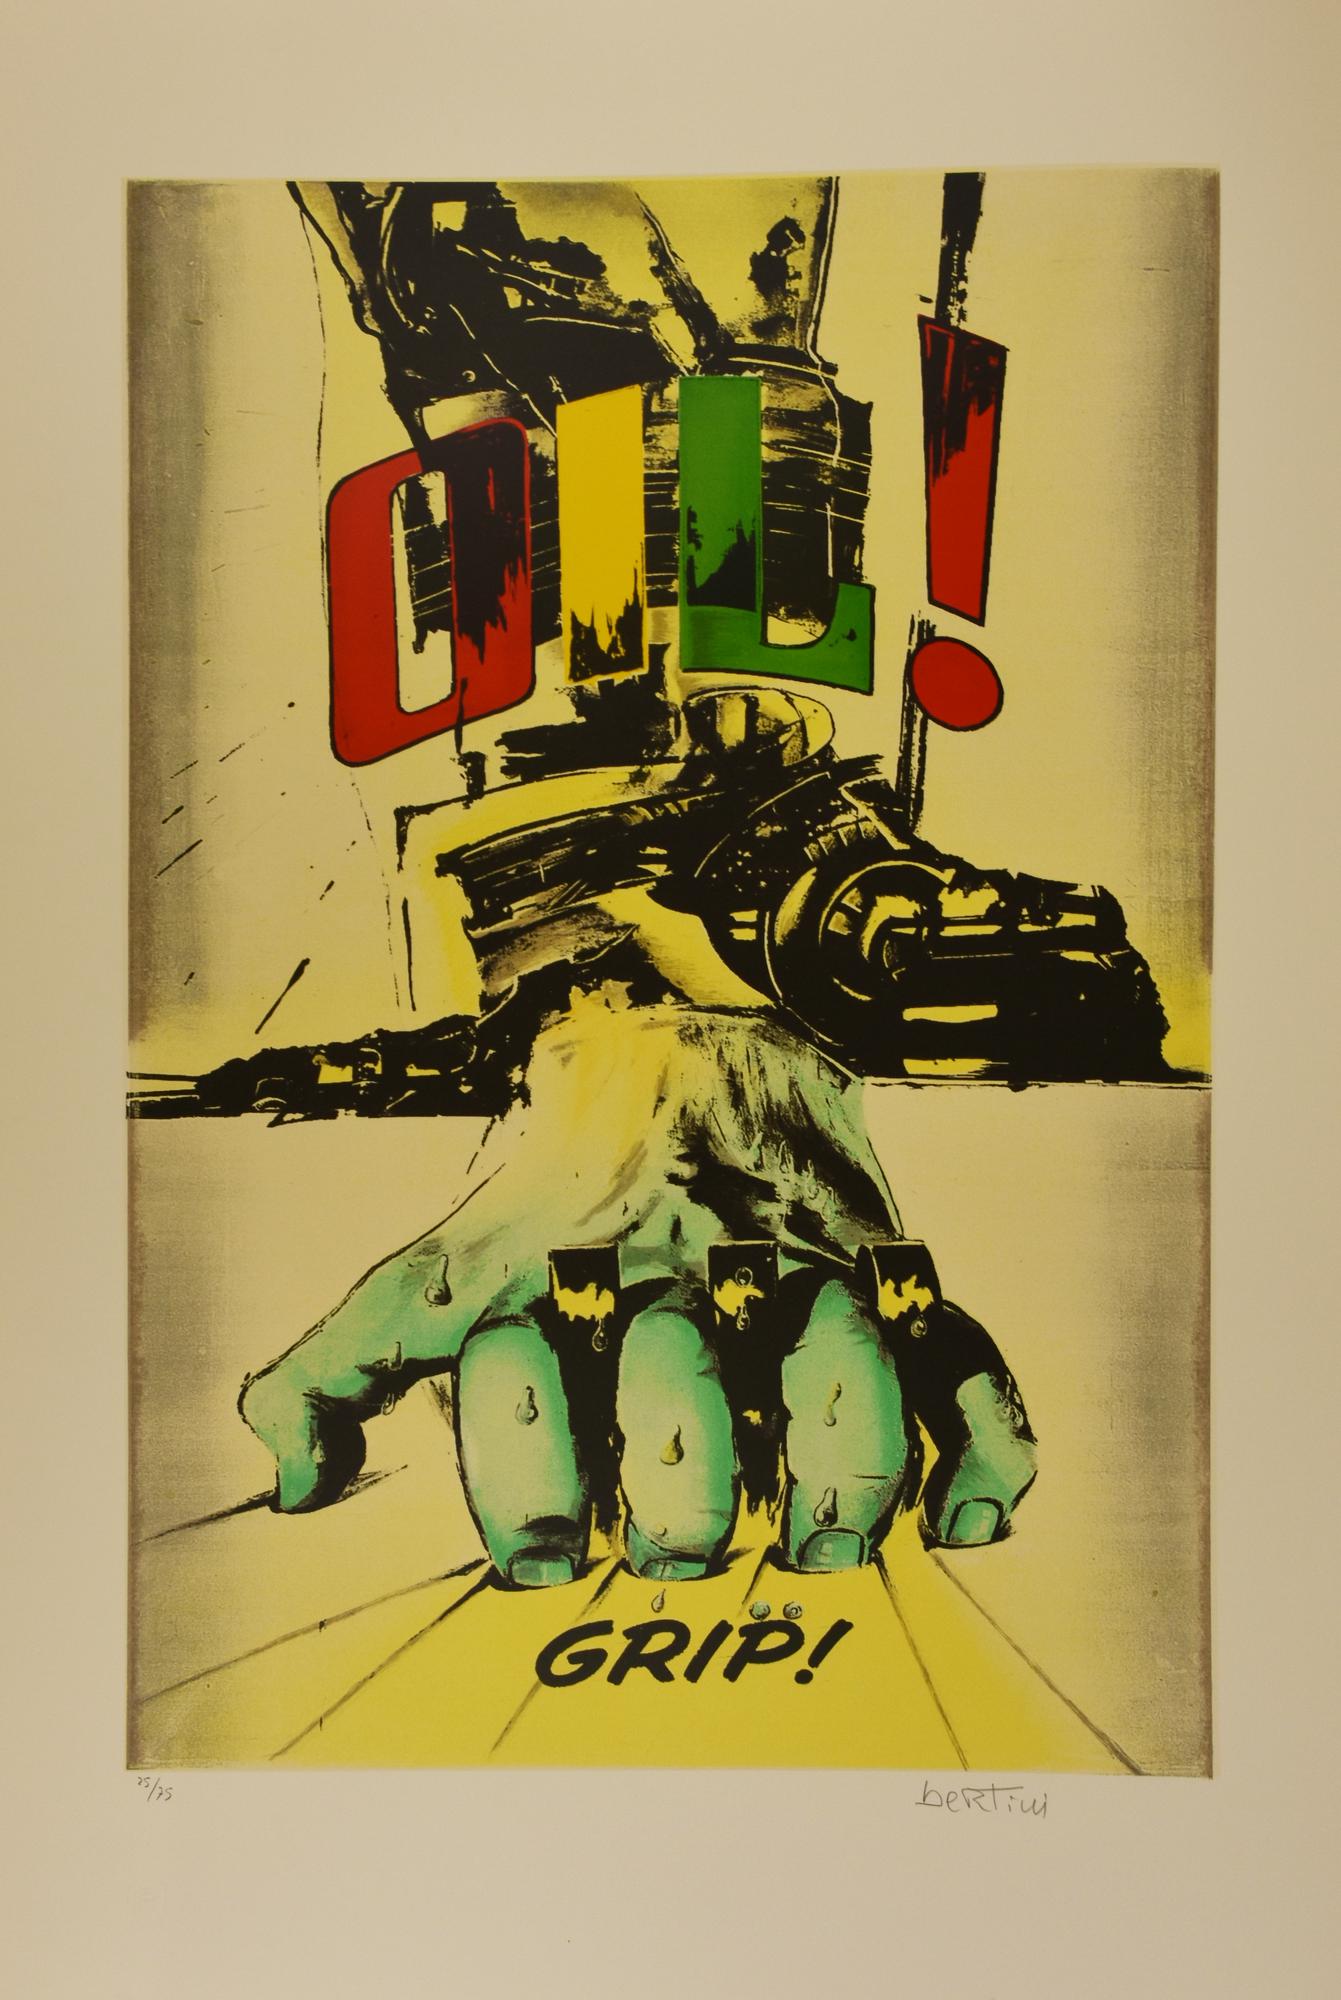 Gianni Bertini (1922 - 2010) GRIP, 2003 serigrafia, cm 110x77; es. 25/75...